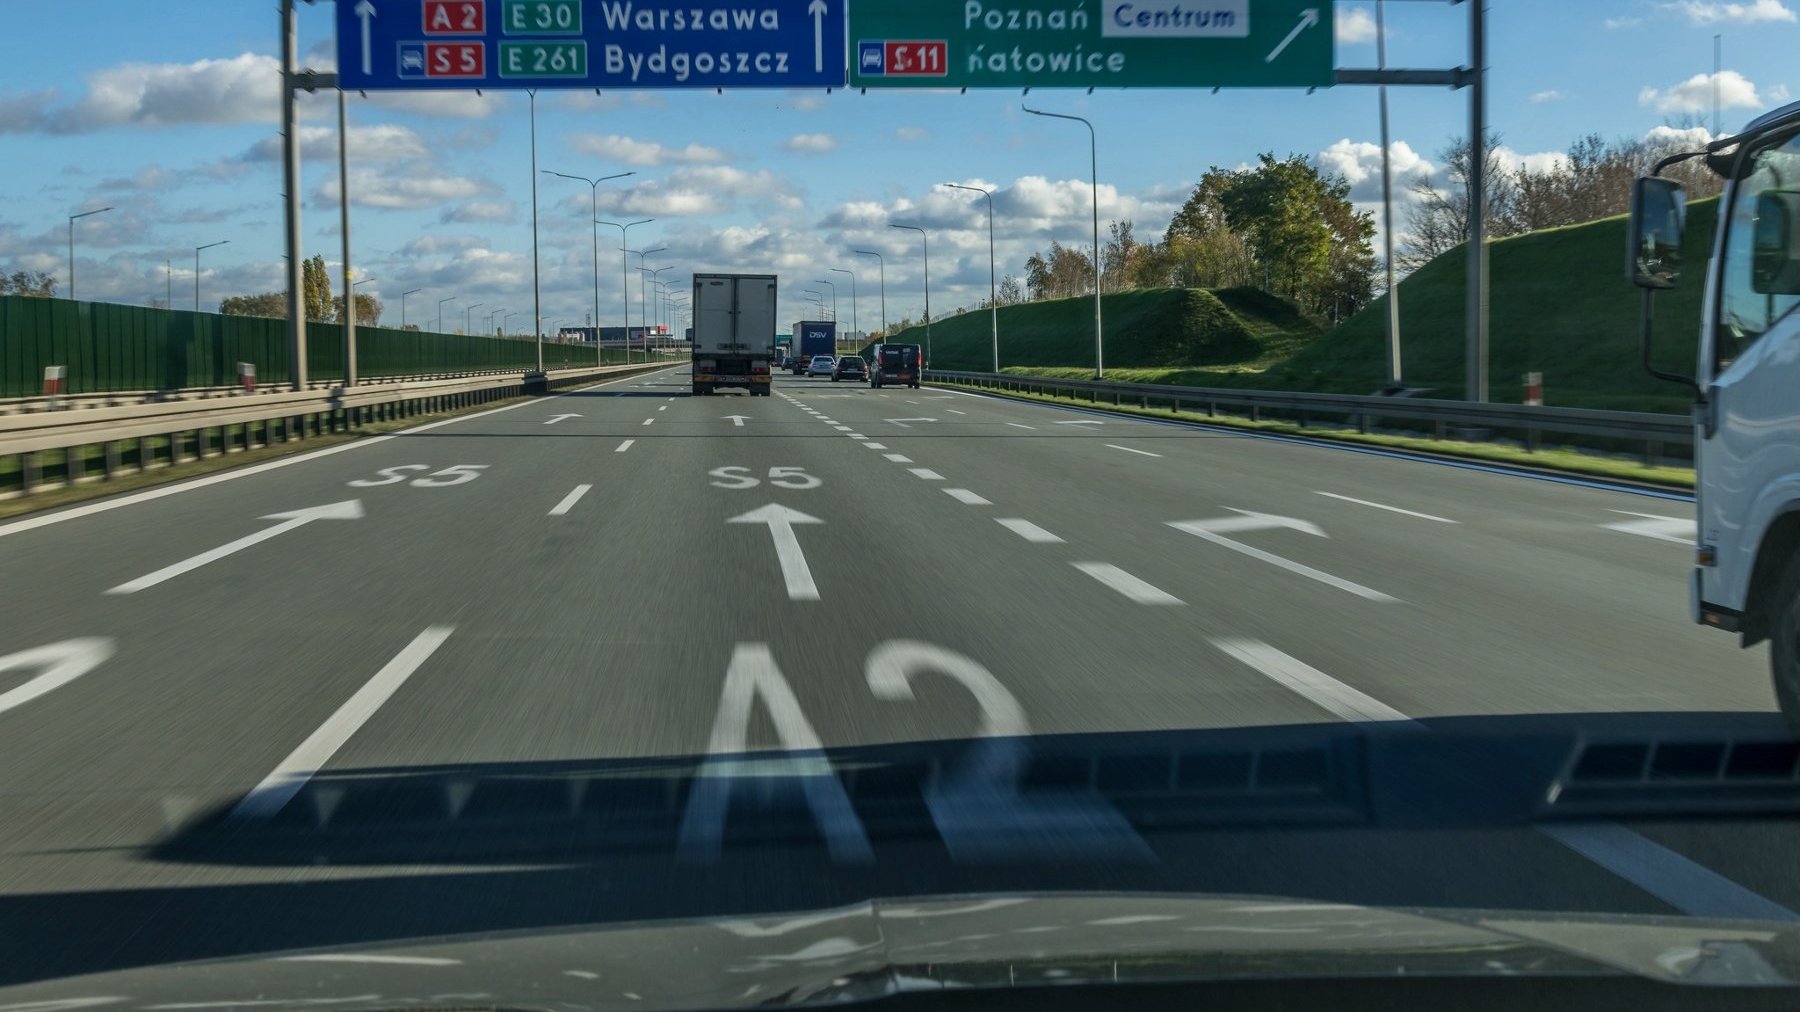 Zdjęcie z autostradowej obwodnicy Poznania